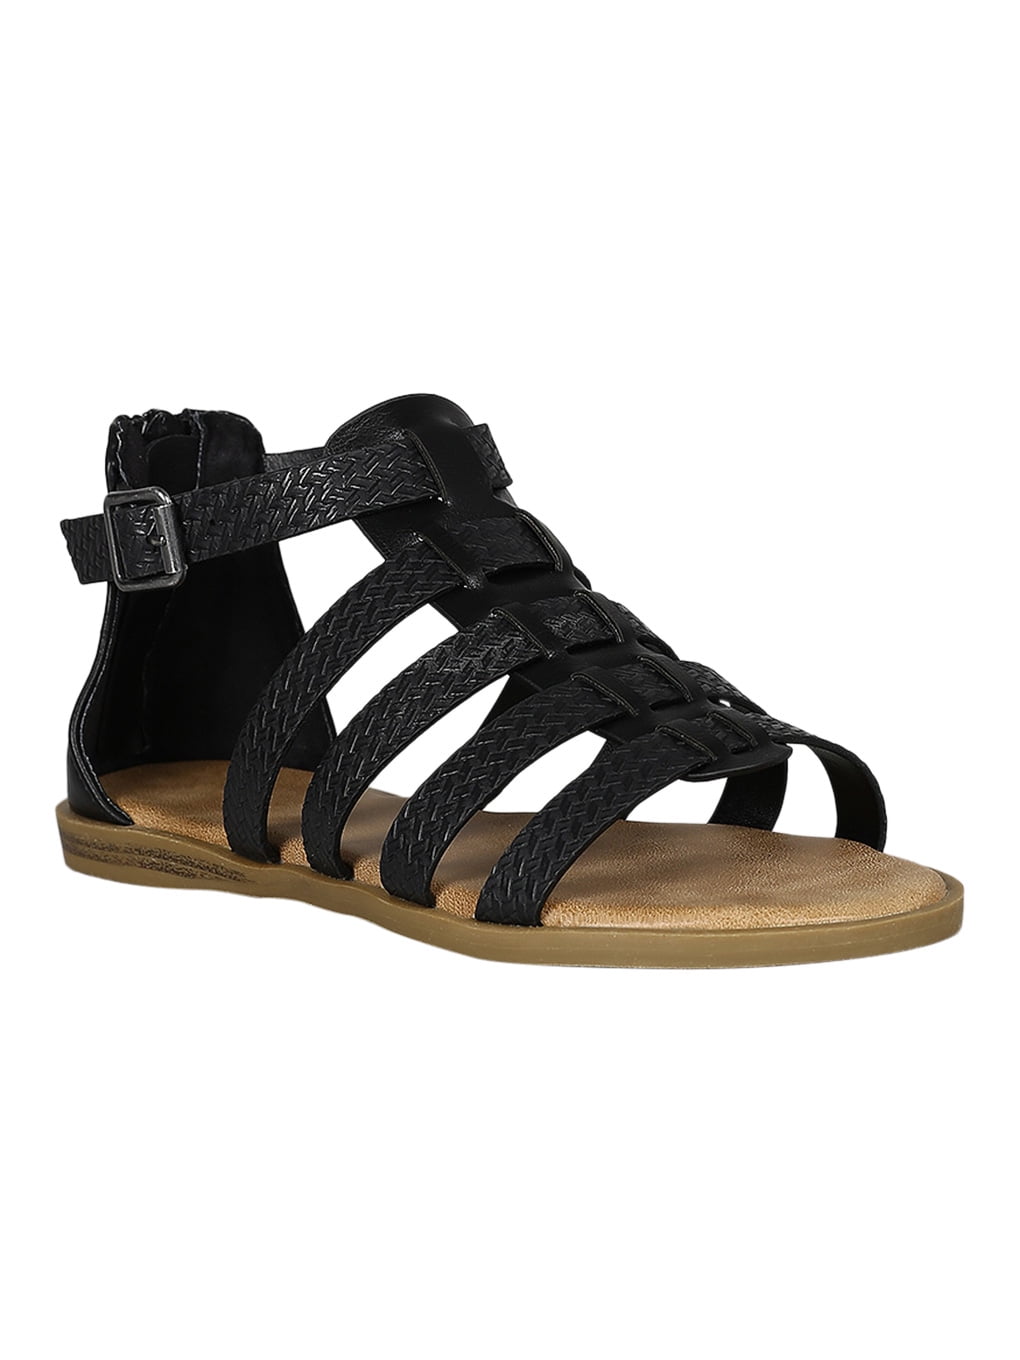 Women Leatherette Open Toe Gladiator Flat Sandal 18455 - Walmart.com